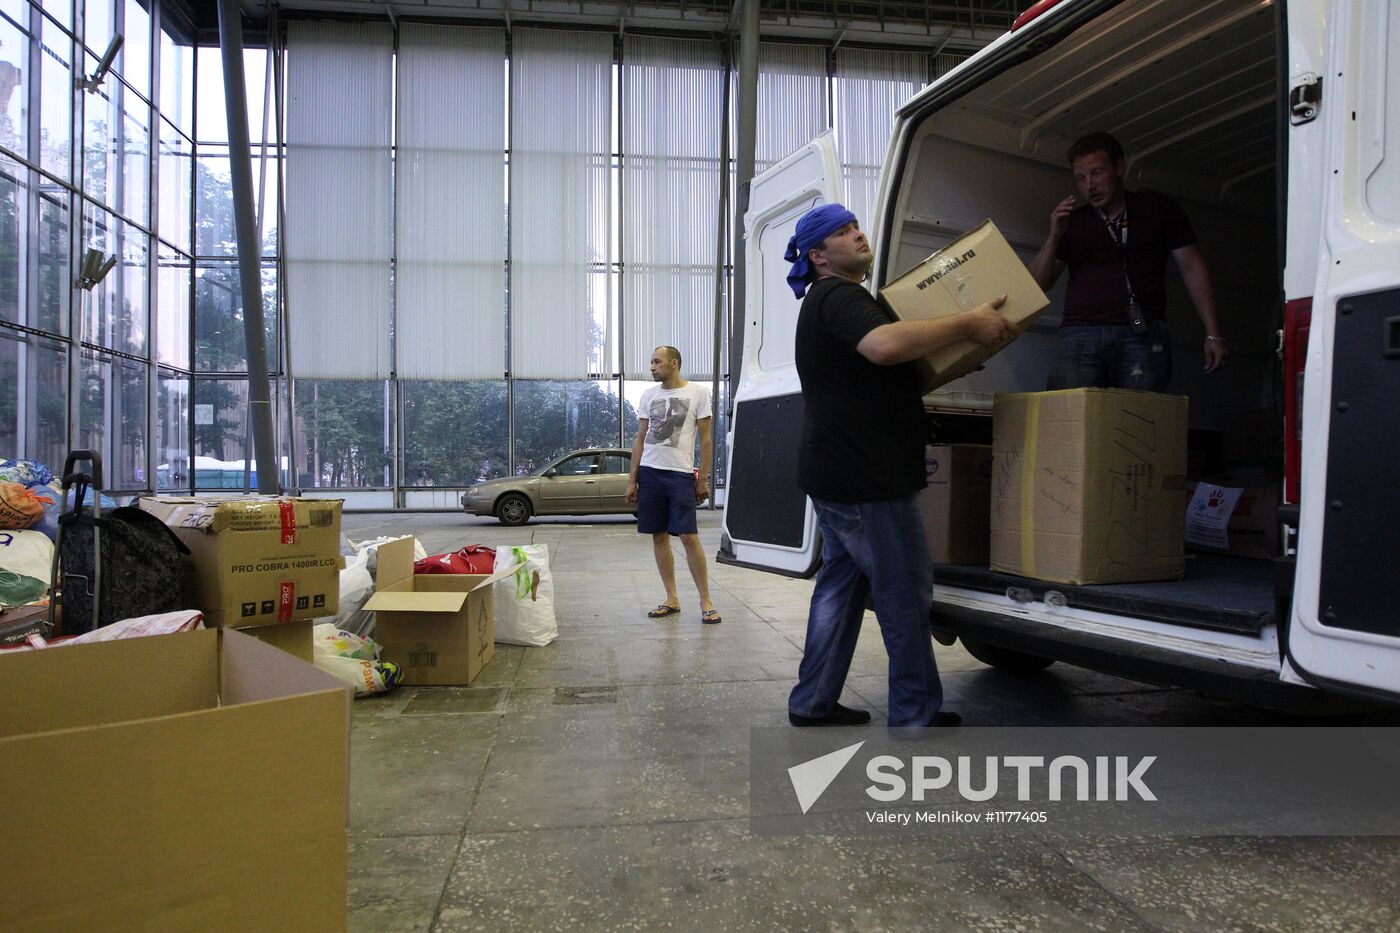 Loading and sending humanitarian aid to Krasnodar territory